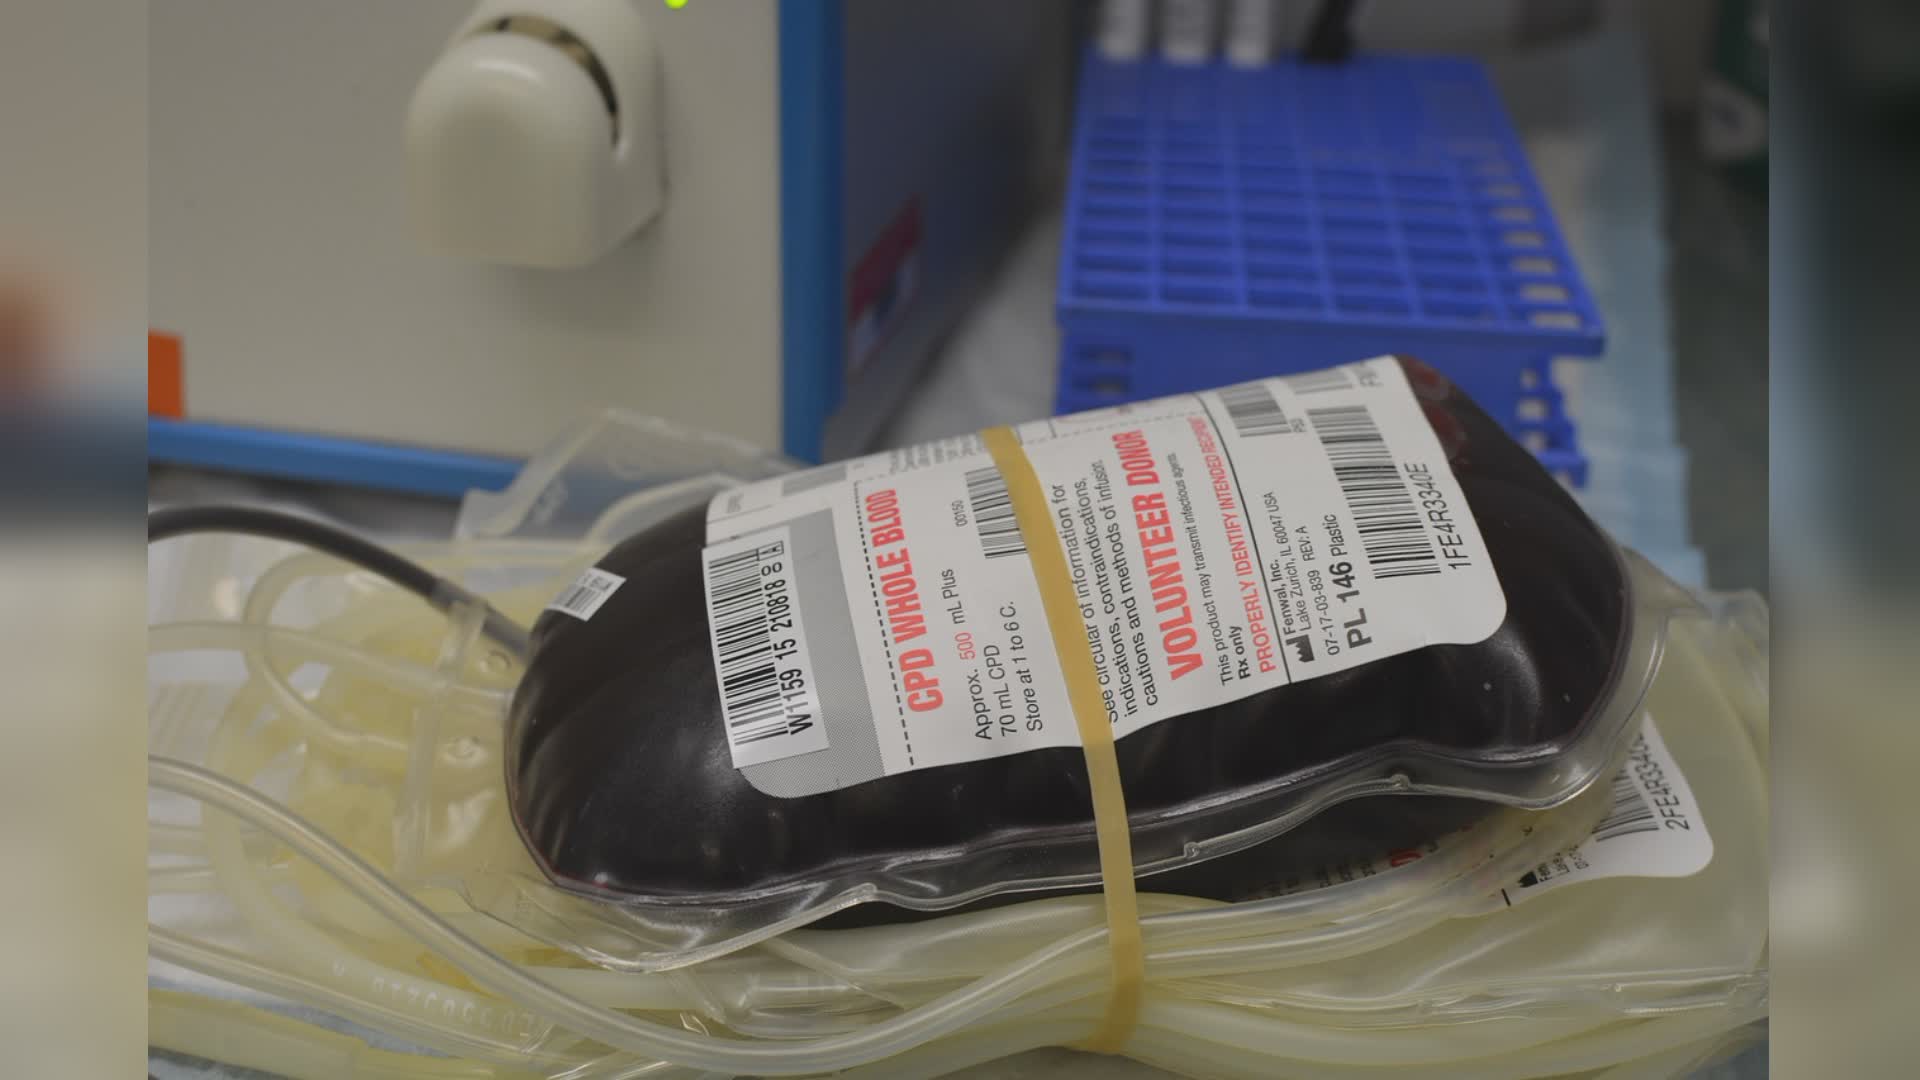 Regione Liguria, l'assessore Gratarola: "Le campagne di sensibilizzione alla donazione del sangue funzionano: 400 sacche in più nel periodo estivo"